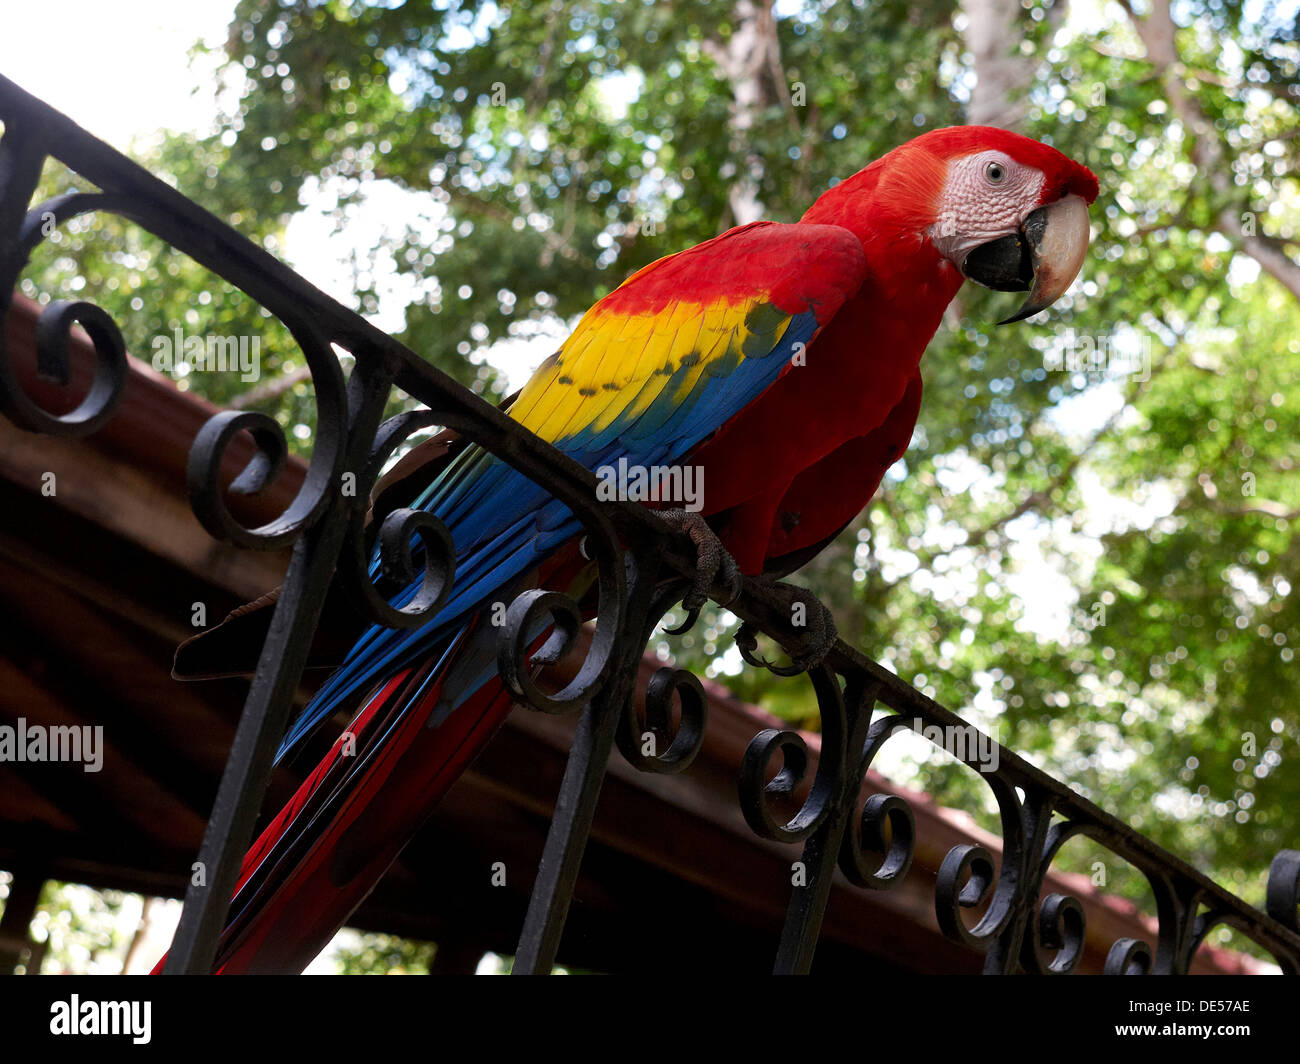 Ara rouge (Ara macao) perché sur un rail, Parc National Carara, Costa Rica, Amérique Centrale Banque D'Images